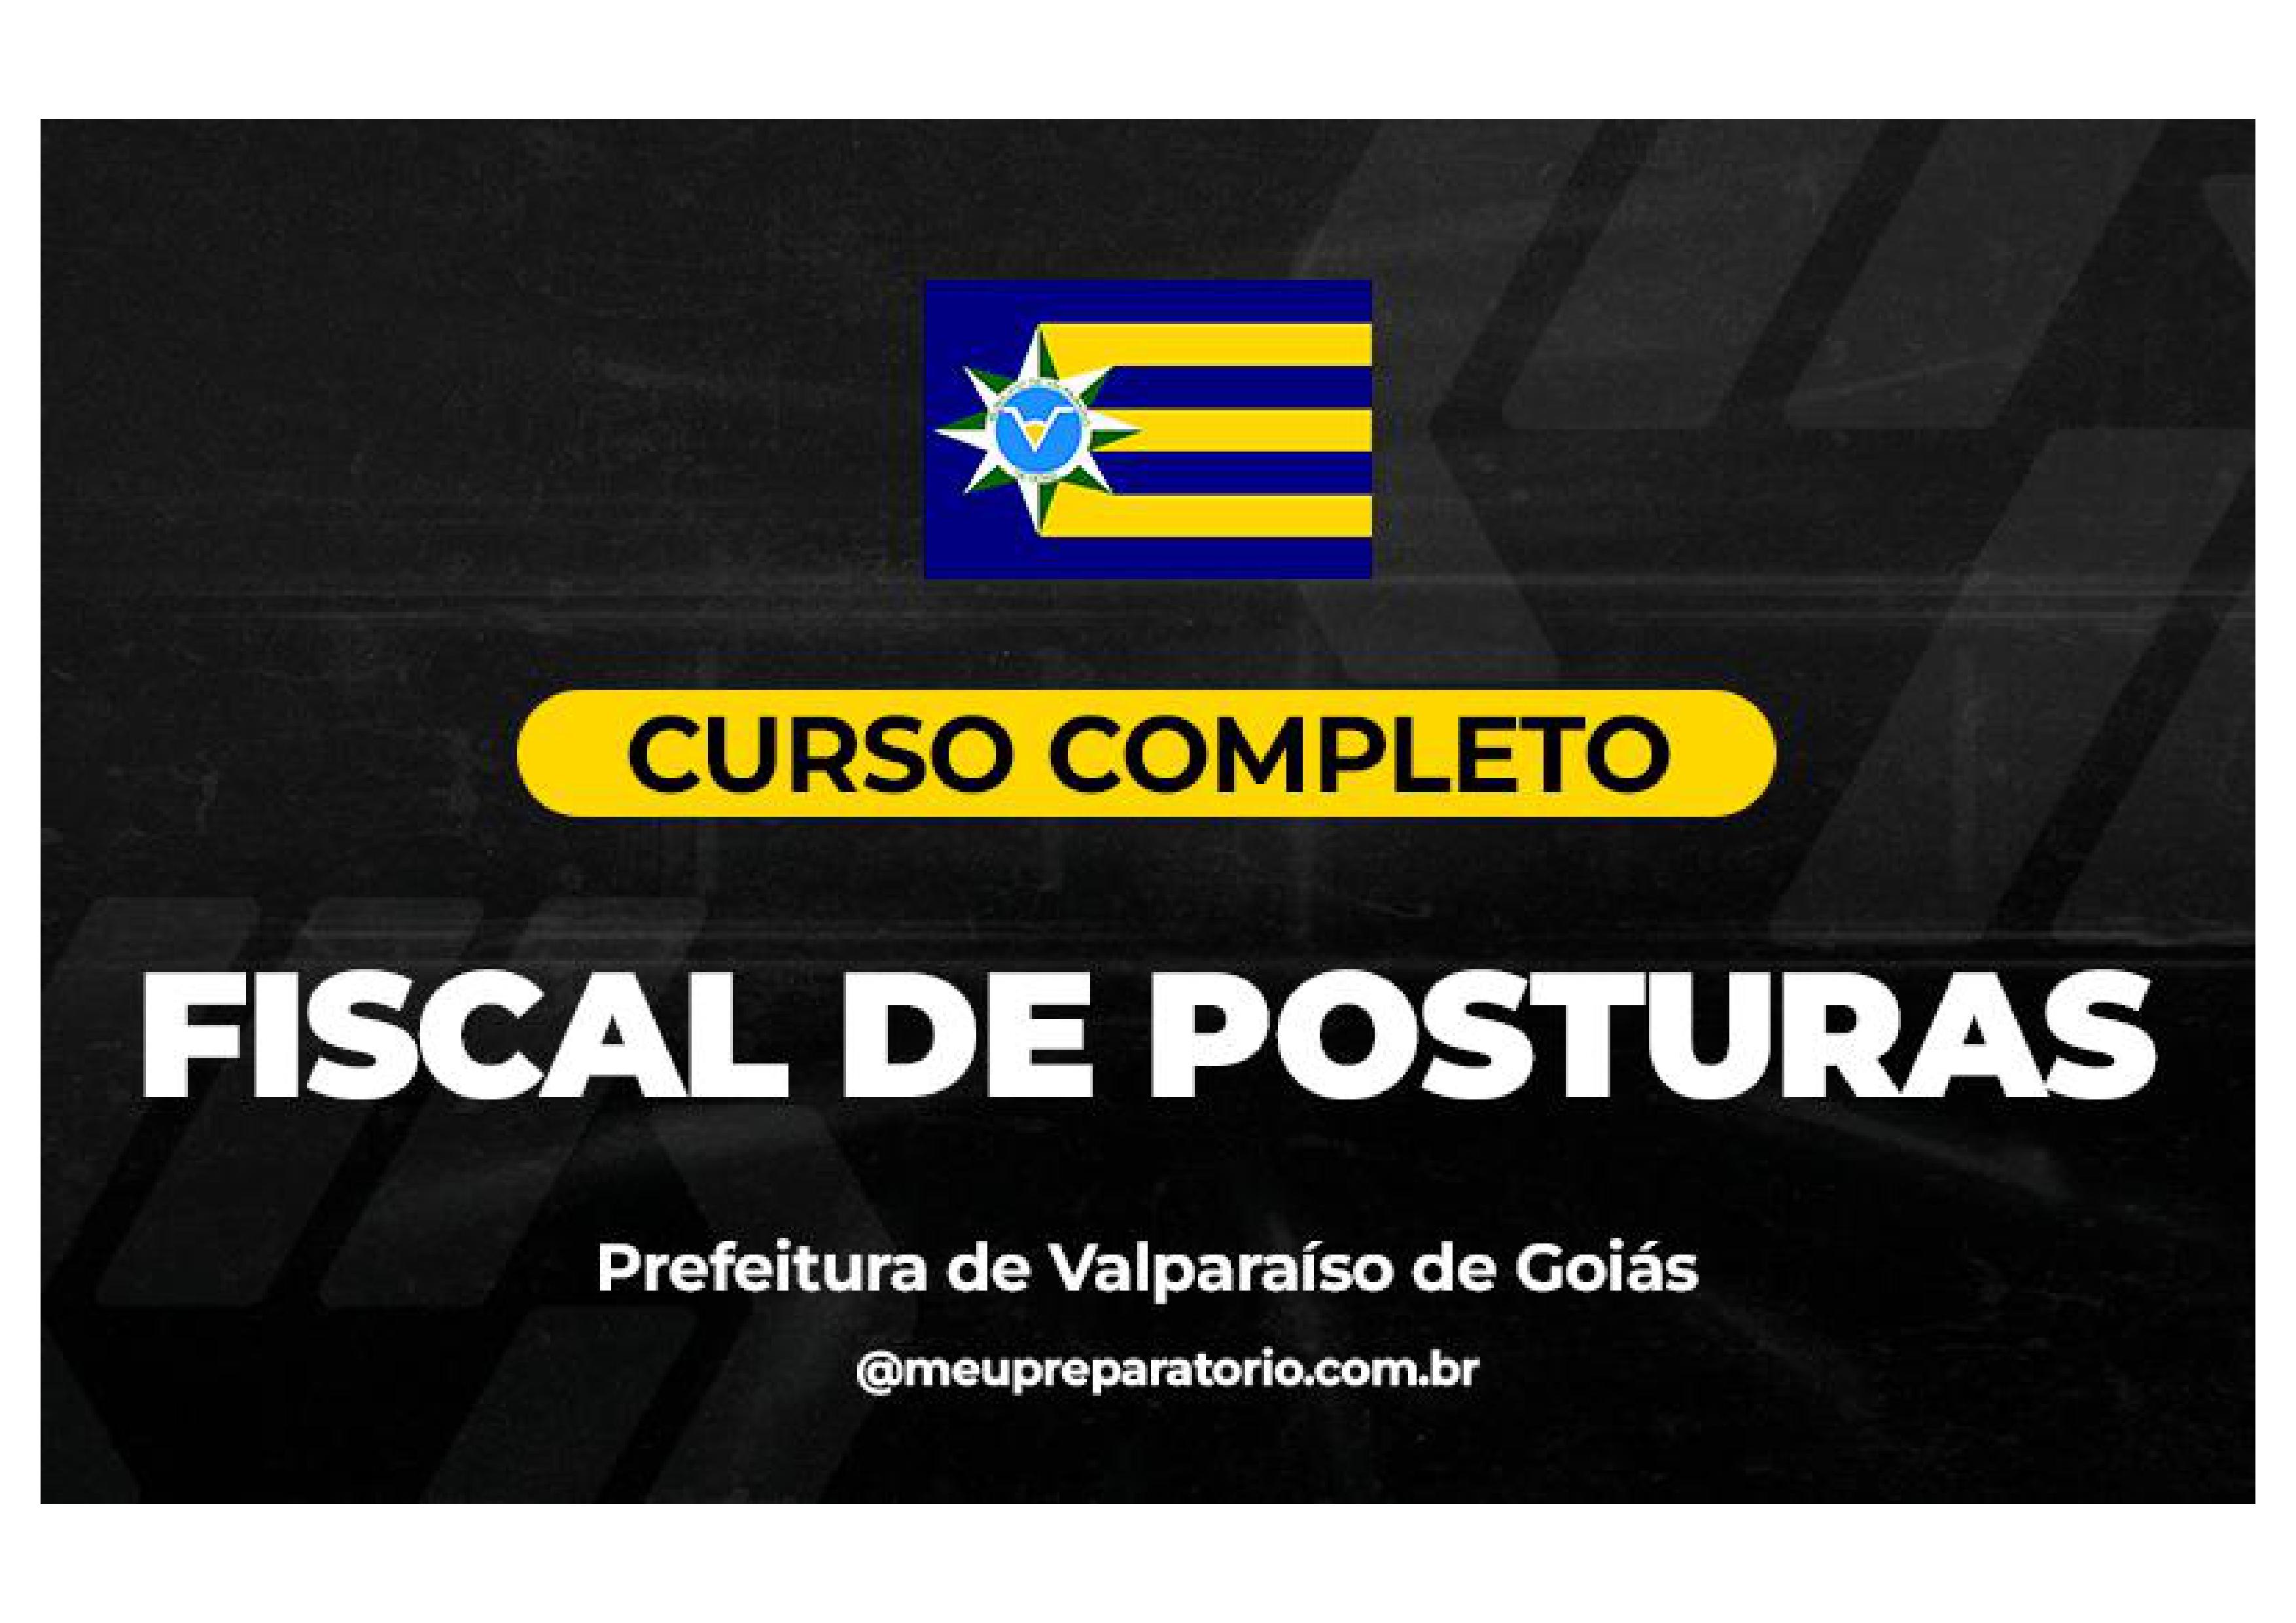 Fiscal de Posturas - Valparaíso (GO)